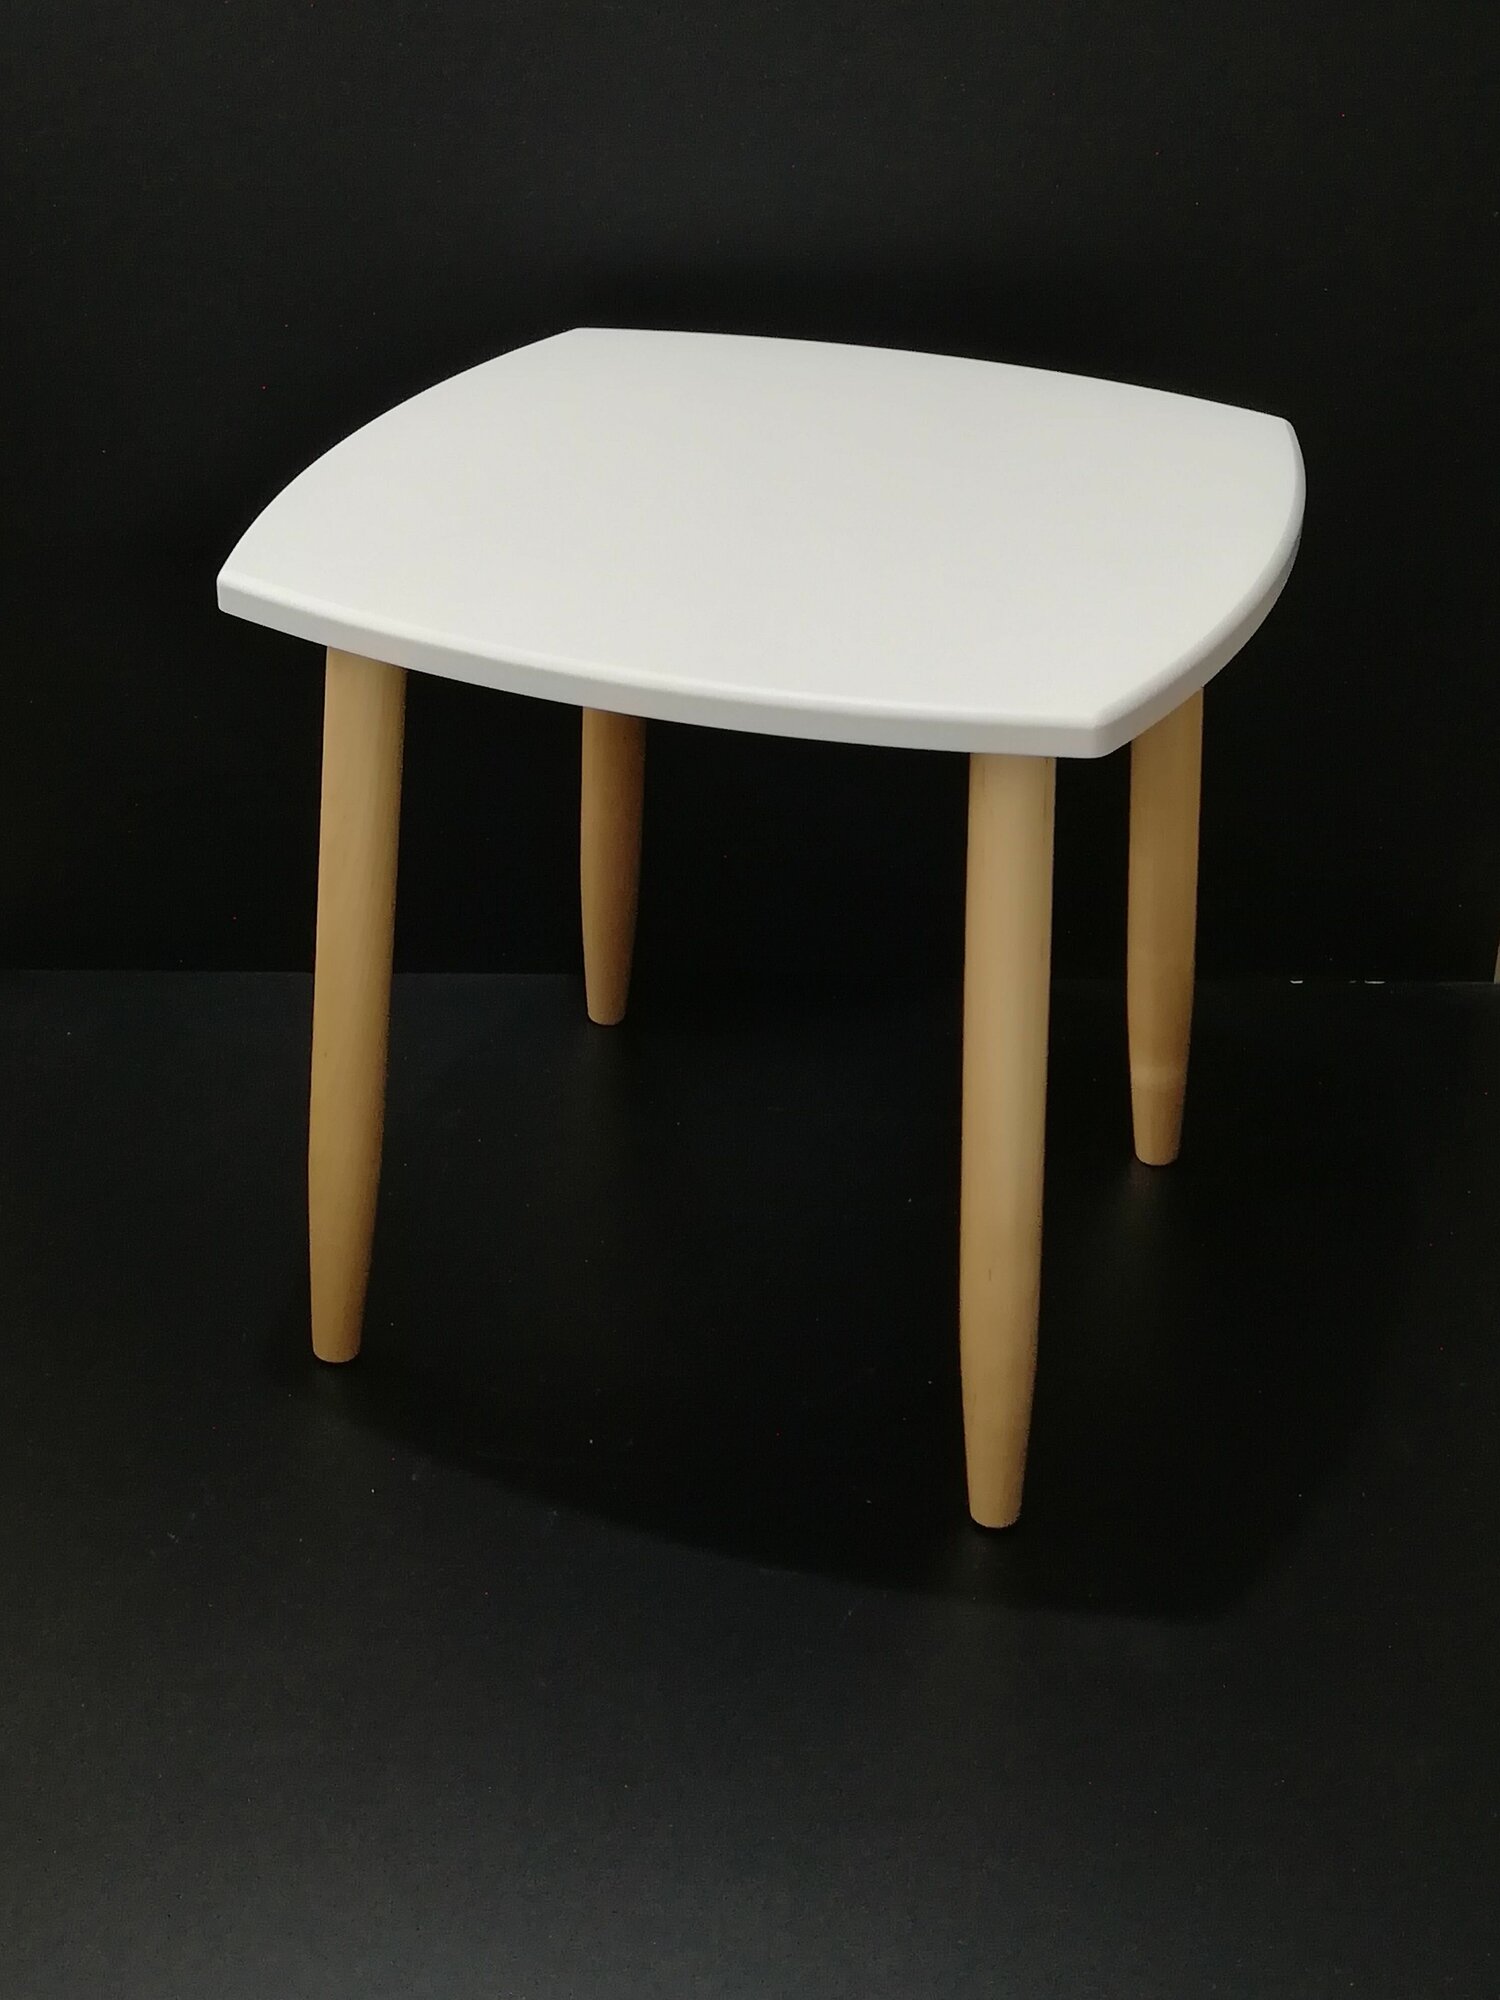 Столик, стол журнальный, столик кофейный, прикроватный, квадратный, д= 47 см, ш =47 см, в =47 см, цвет: белый, ножки лакированные из березы.